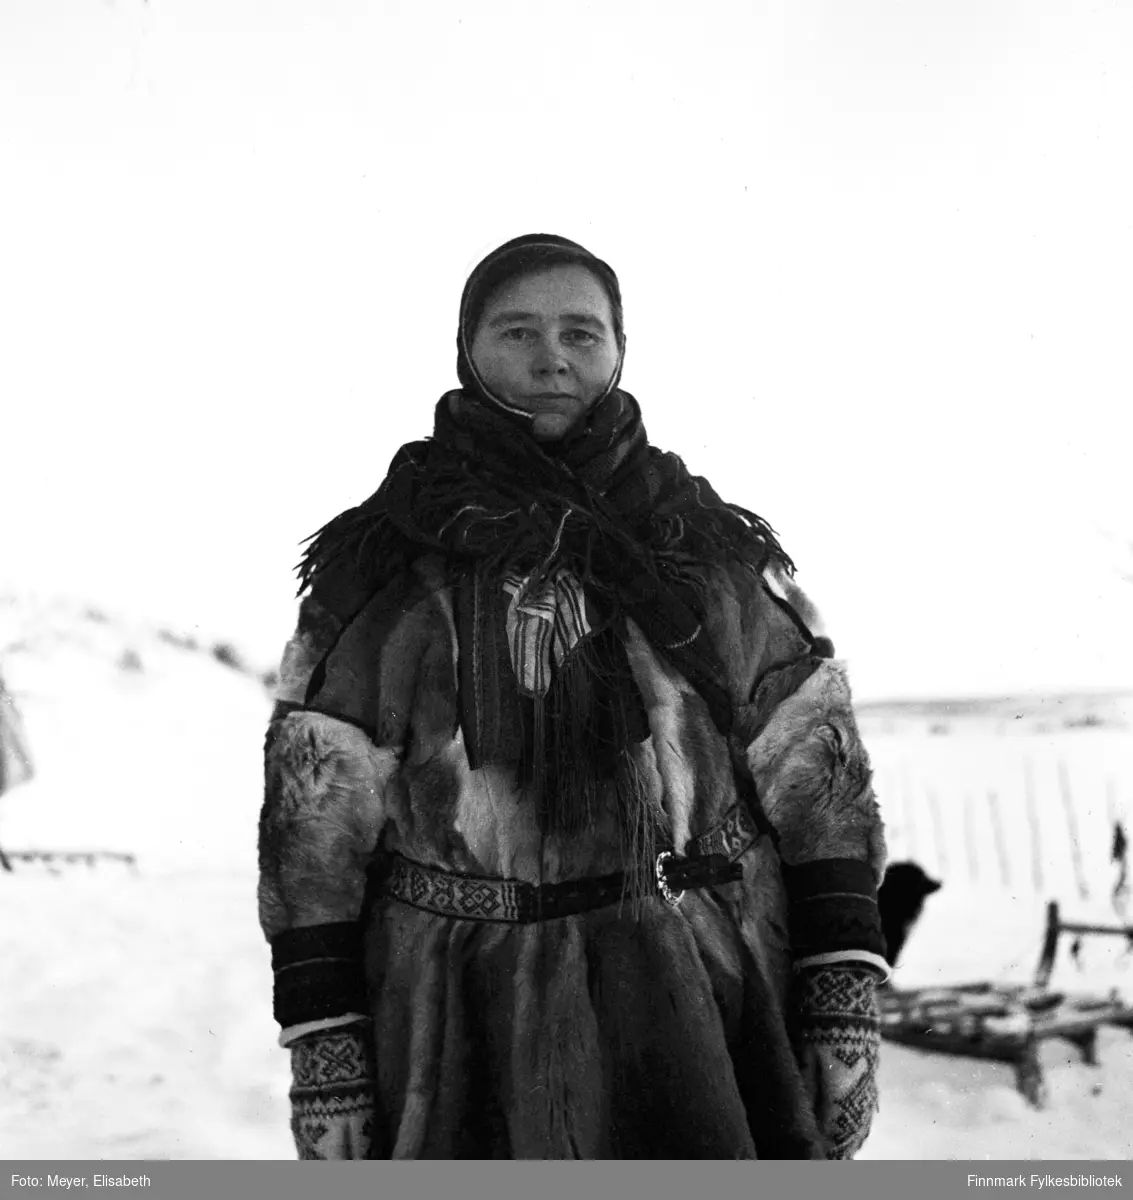 Ellen Johnsdatter Utsi kledd i samisk pesk med samisk belte, lue, sjal og votter. Fotografert av Elisabeth Meyer, mulighens i perioden rundt påske 1940.